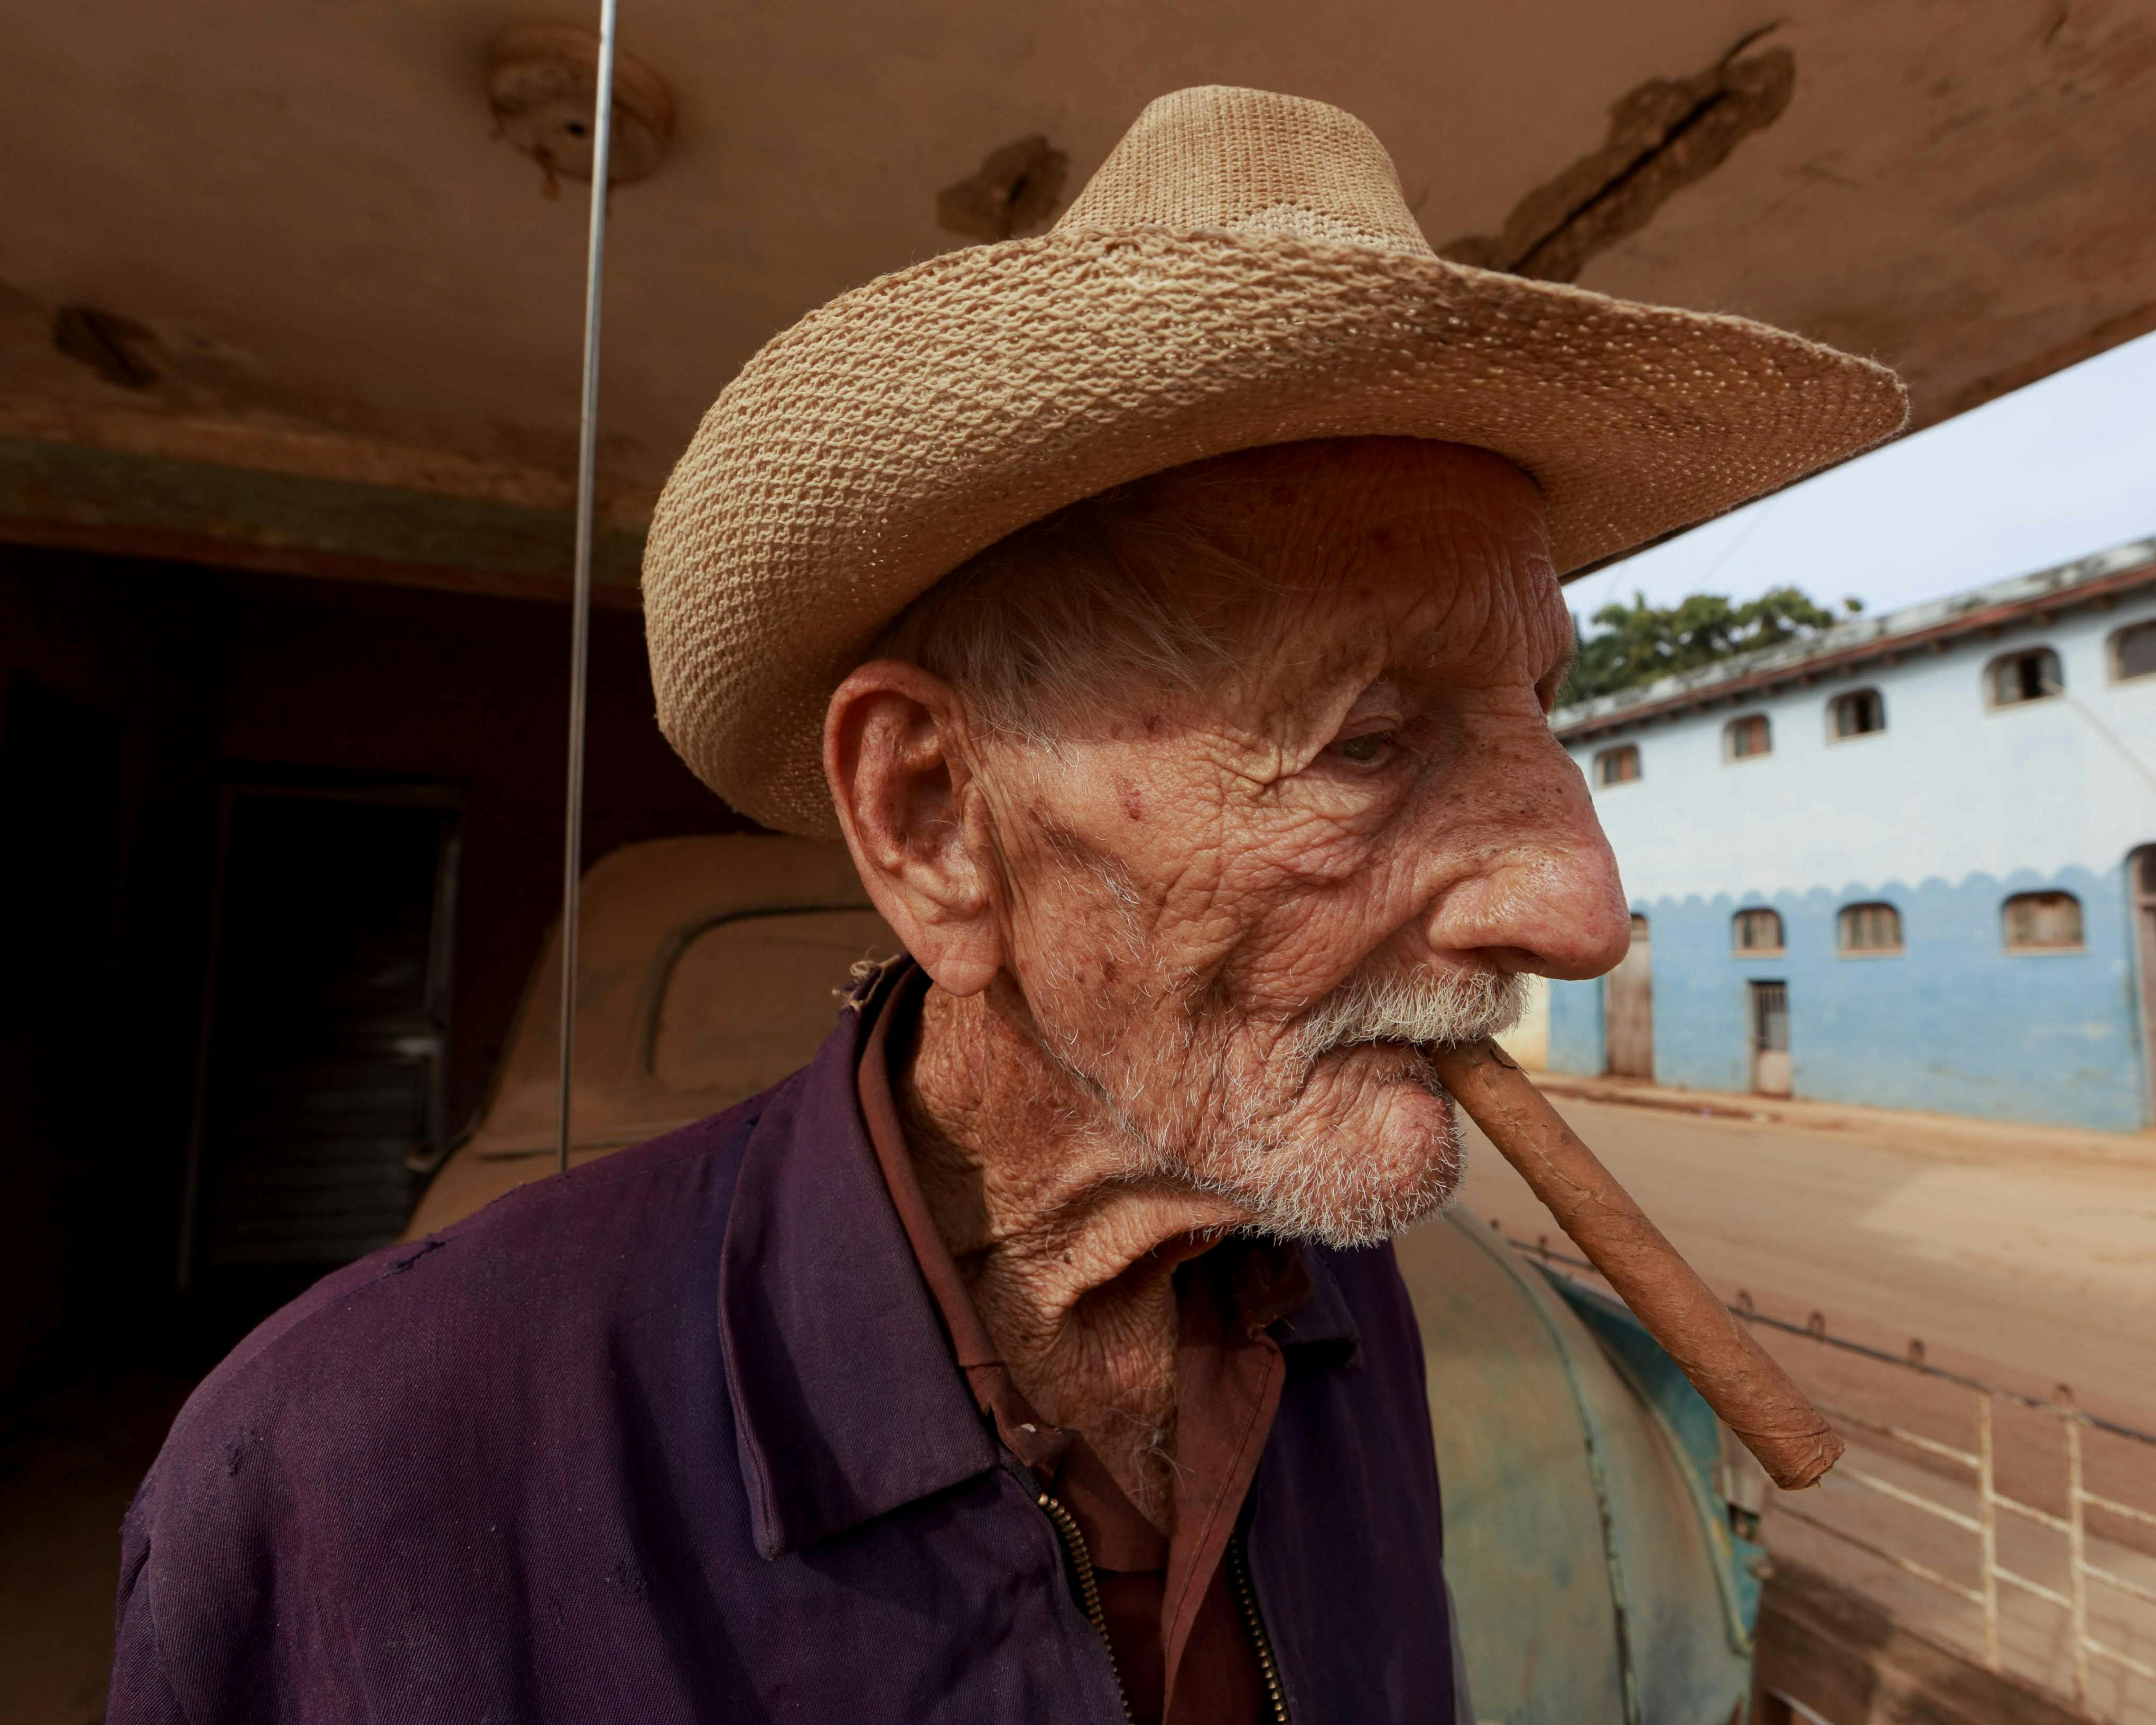 Elderly Man Smoking Cigar in Cowboy Hat · Free Stock Photo